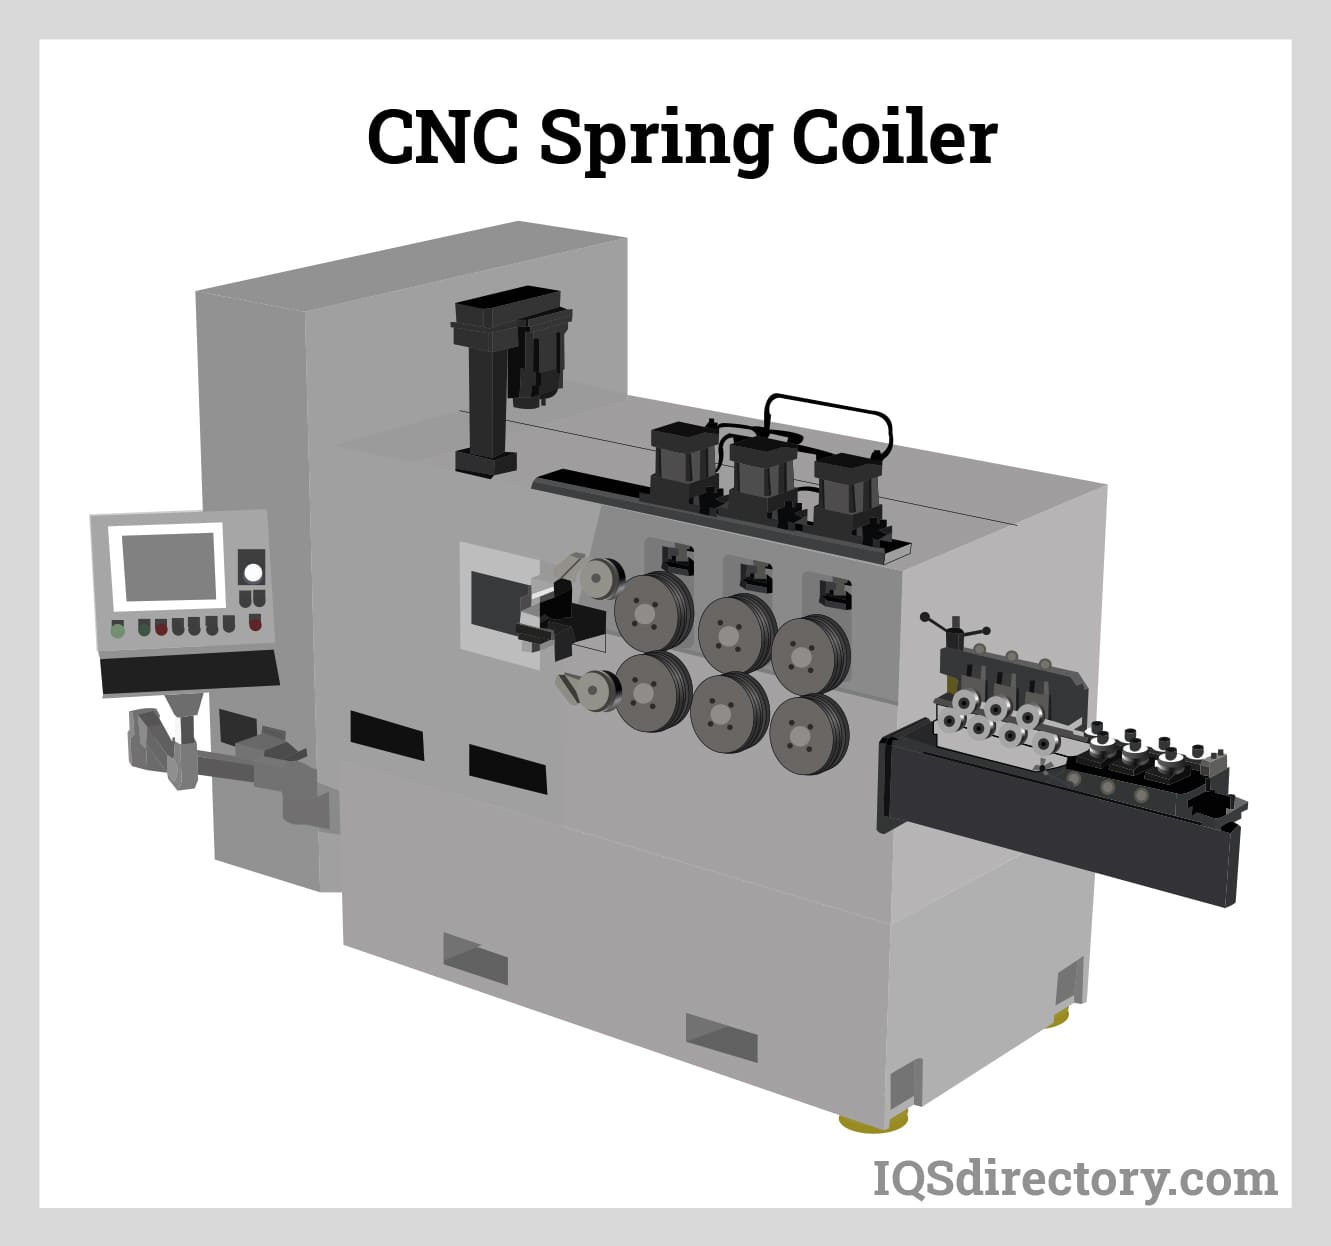 CNC Spring Coiler